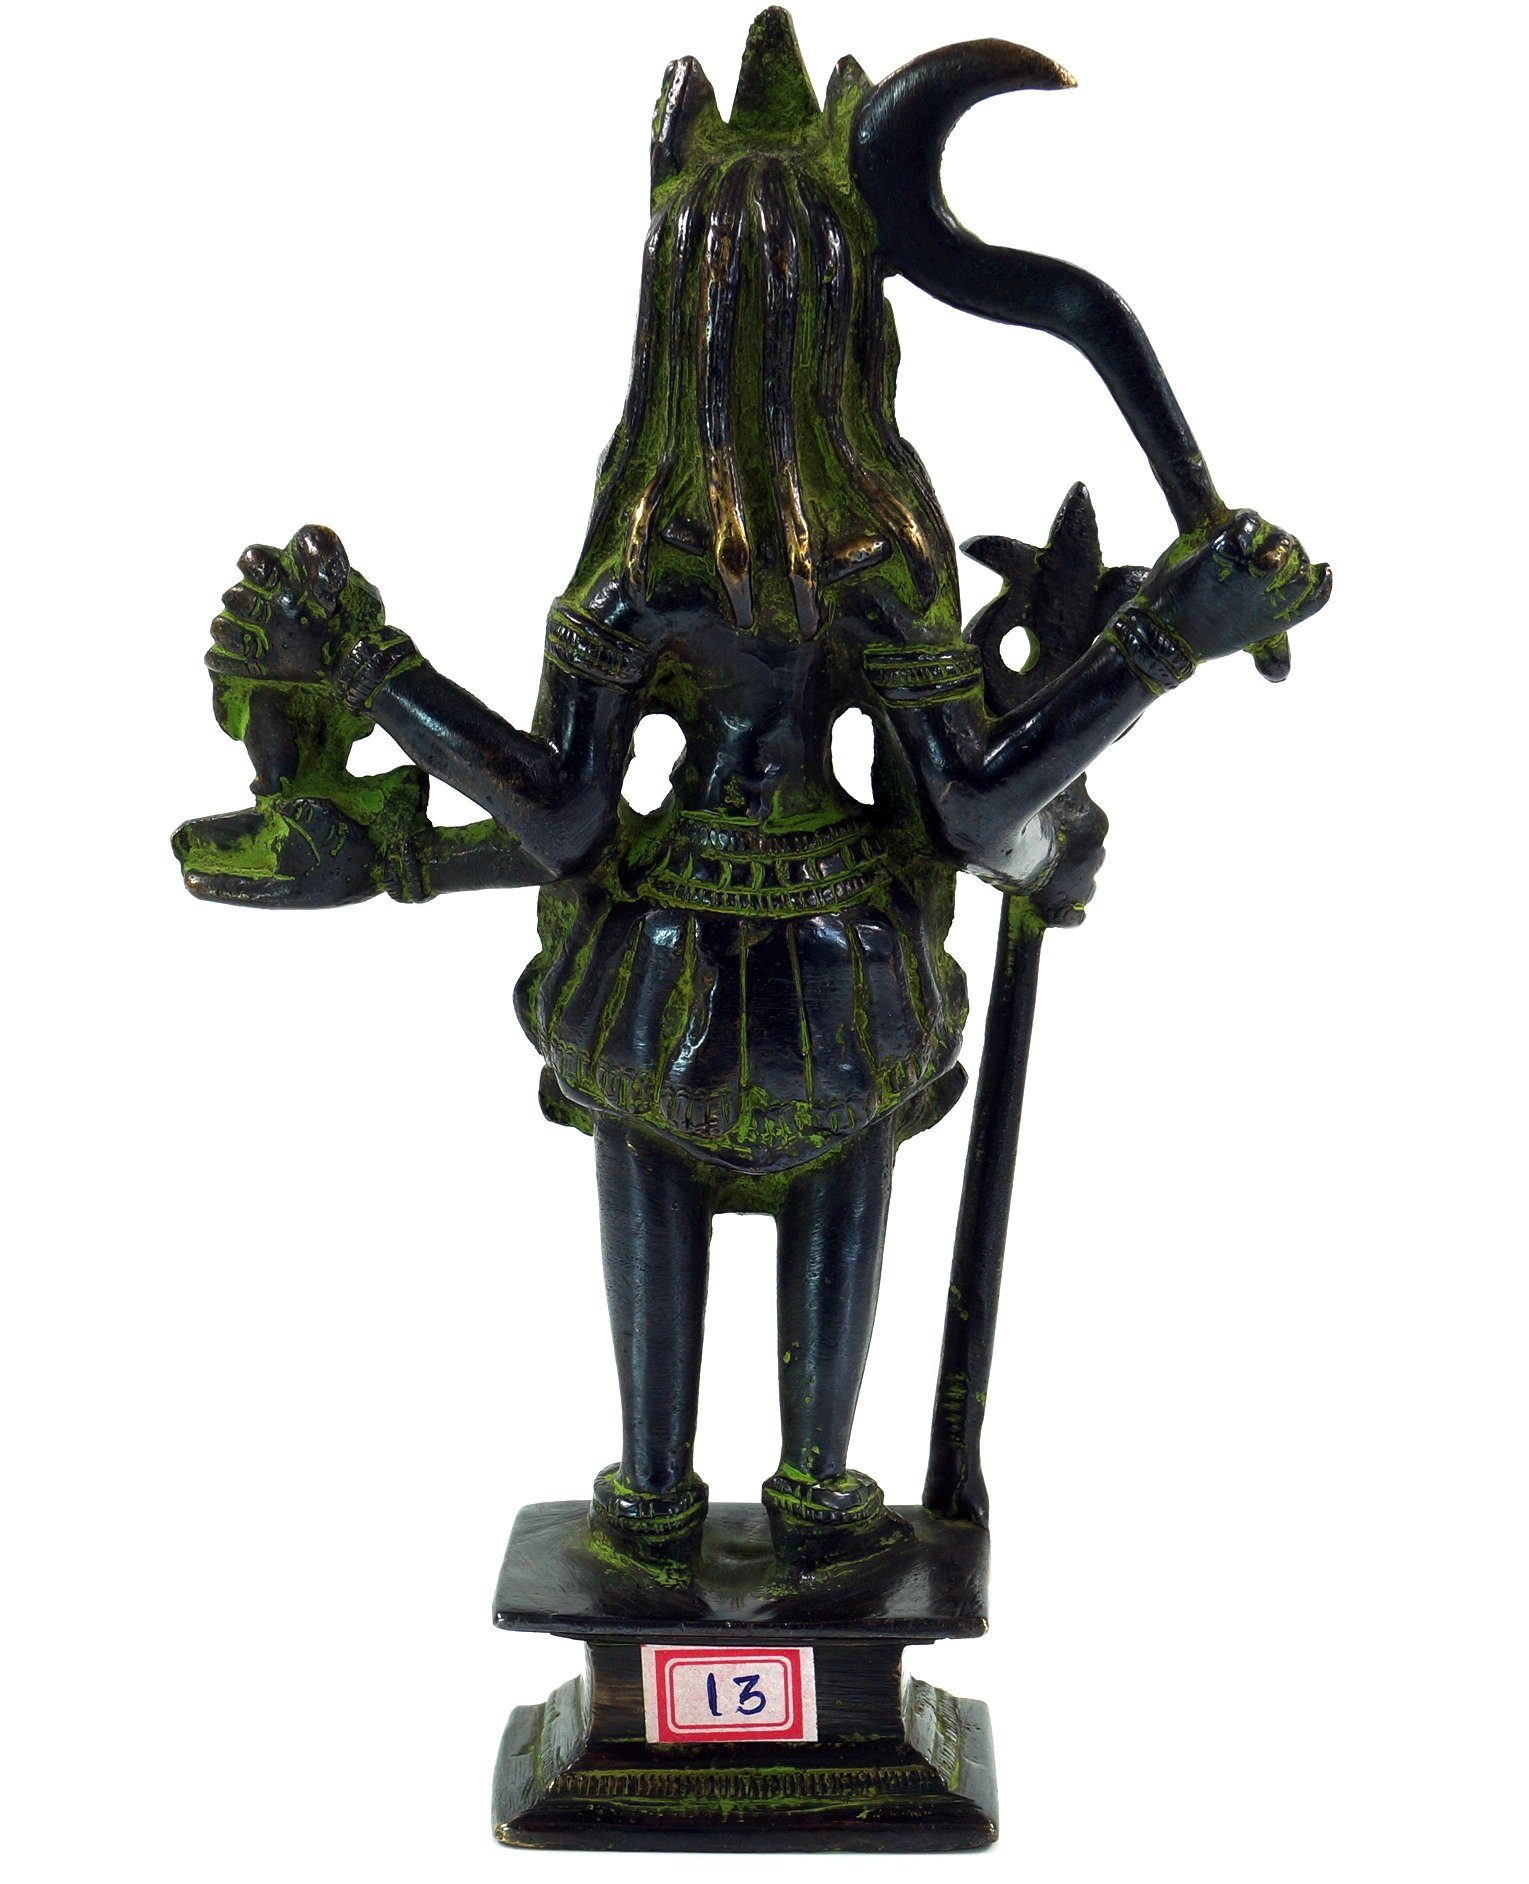 1 Dekofigur 19 Messingfigur, Statue cm Guru-Shop - Kali Motiv